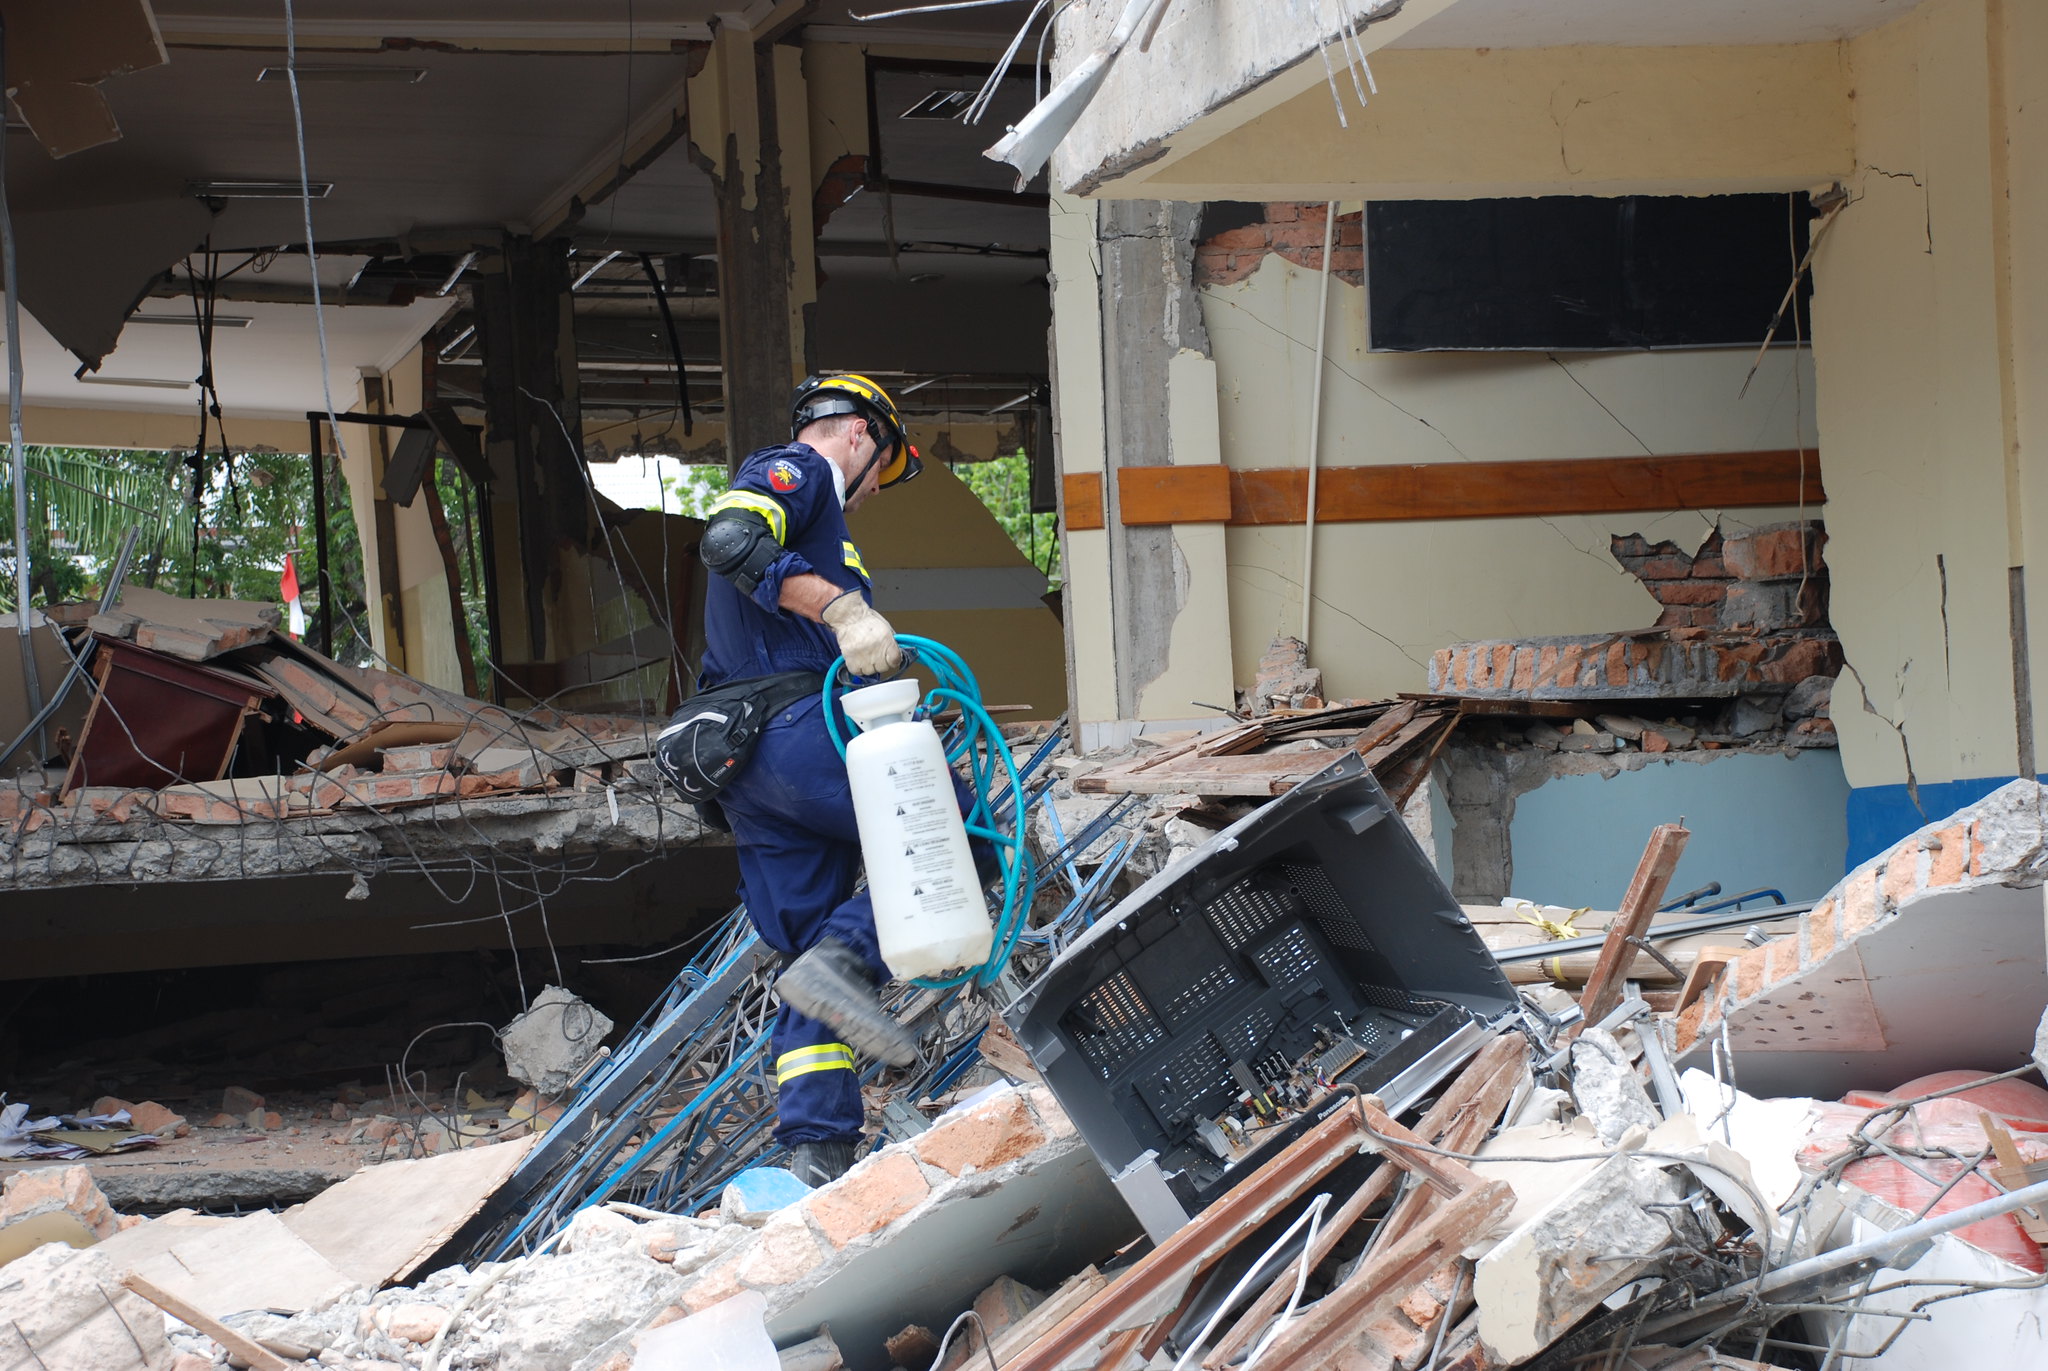 Igrejas enviam socorro após terremoto na Indonésia matar 268 pessoas